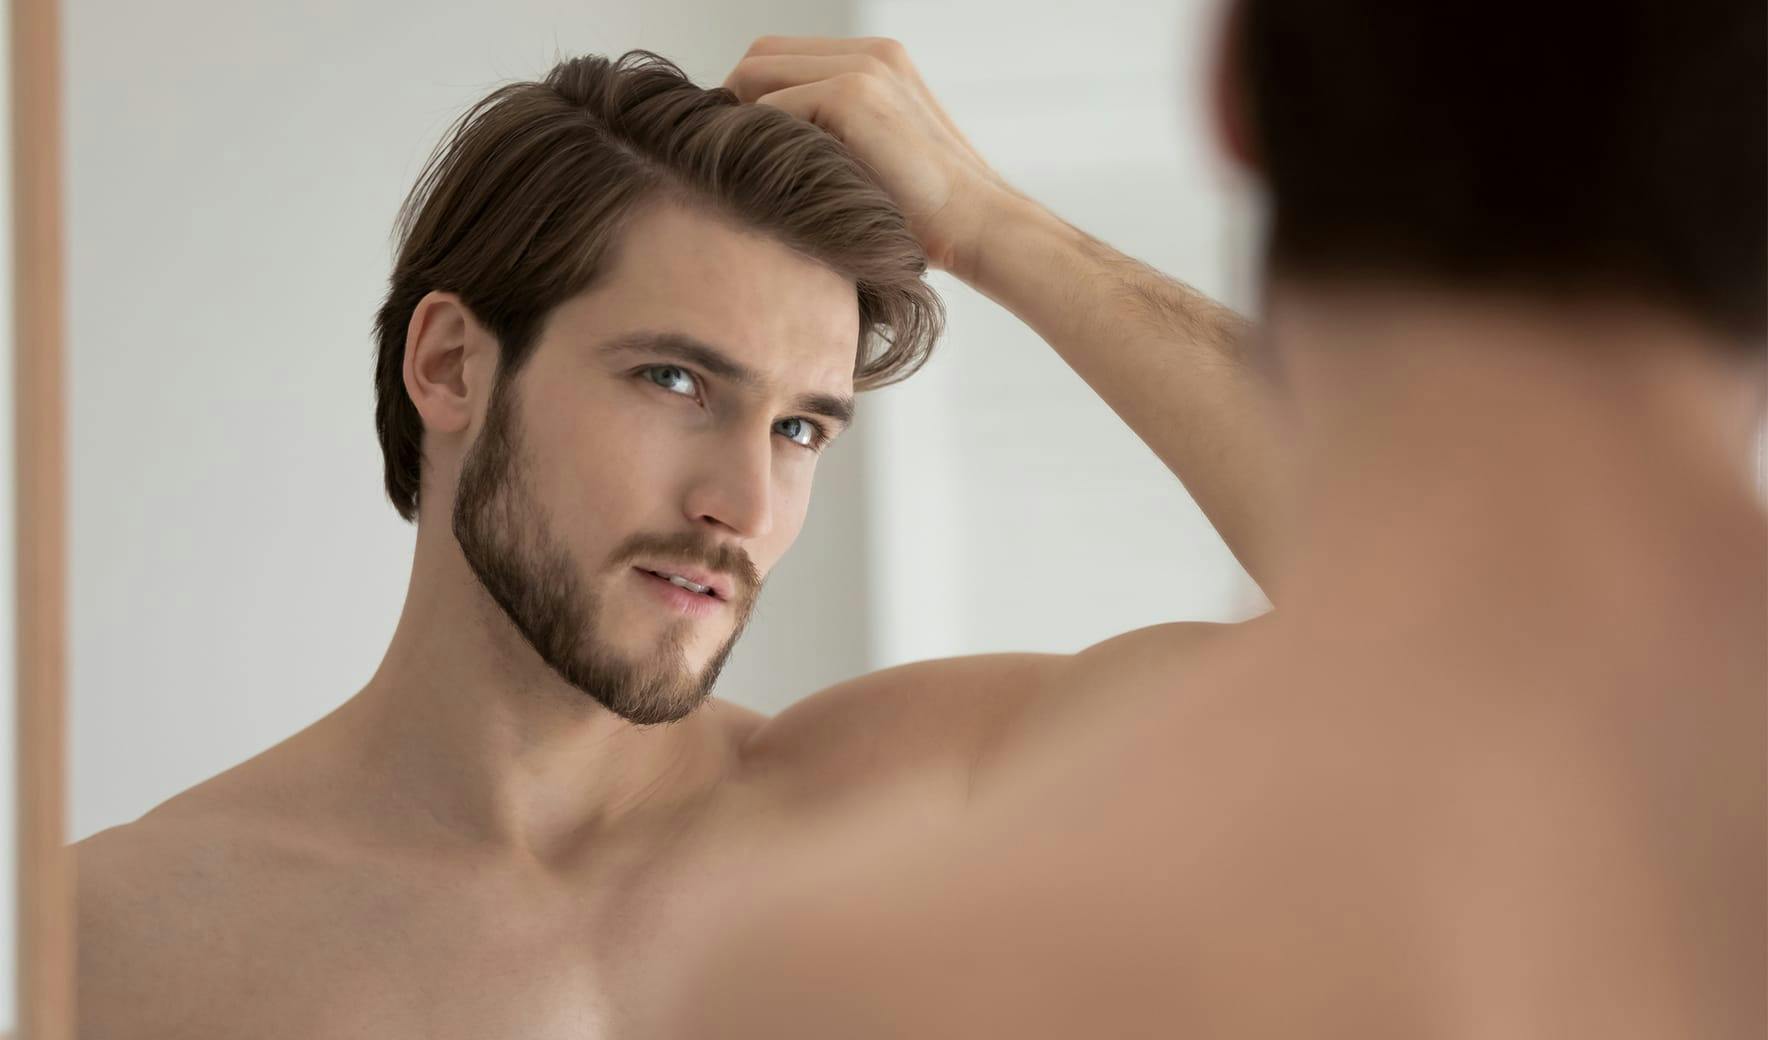 man looking in mirror rubbing hair